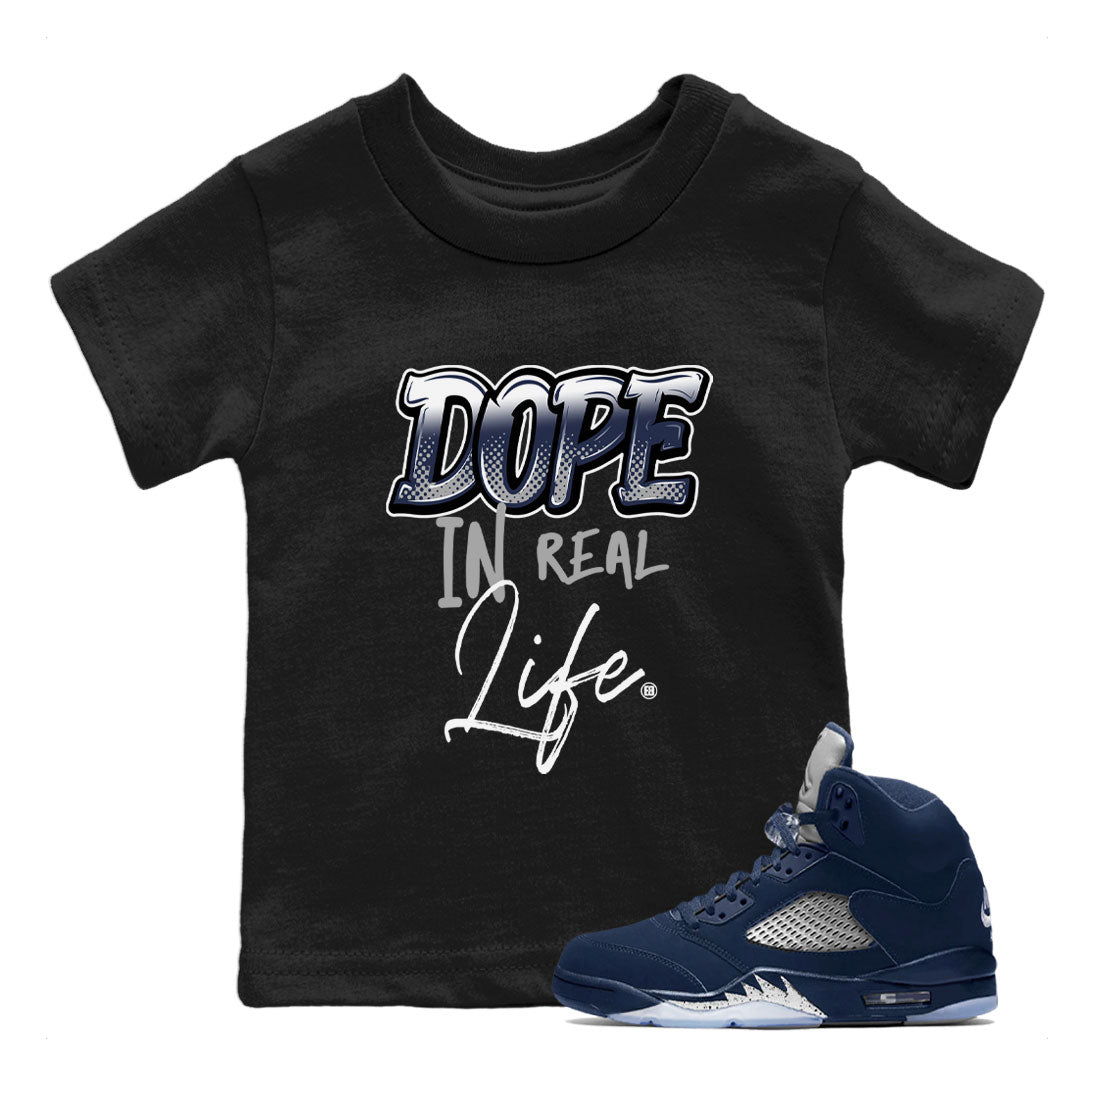 Jordan 5 Retro Georgetown shirt to match jordans Dope In Real Life Streetwear Sneaker Shirt Air Jordan 5 Georgetown Drip Gear Zone Sneaker Matching Clothing Baby Toddler Black 1 T-Shirt